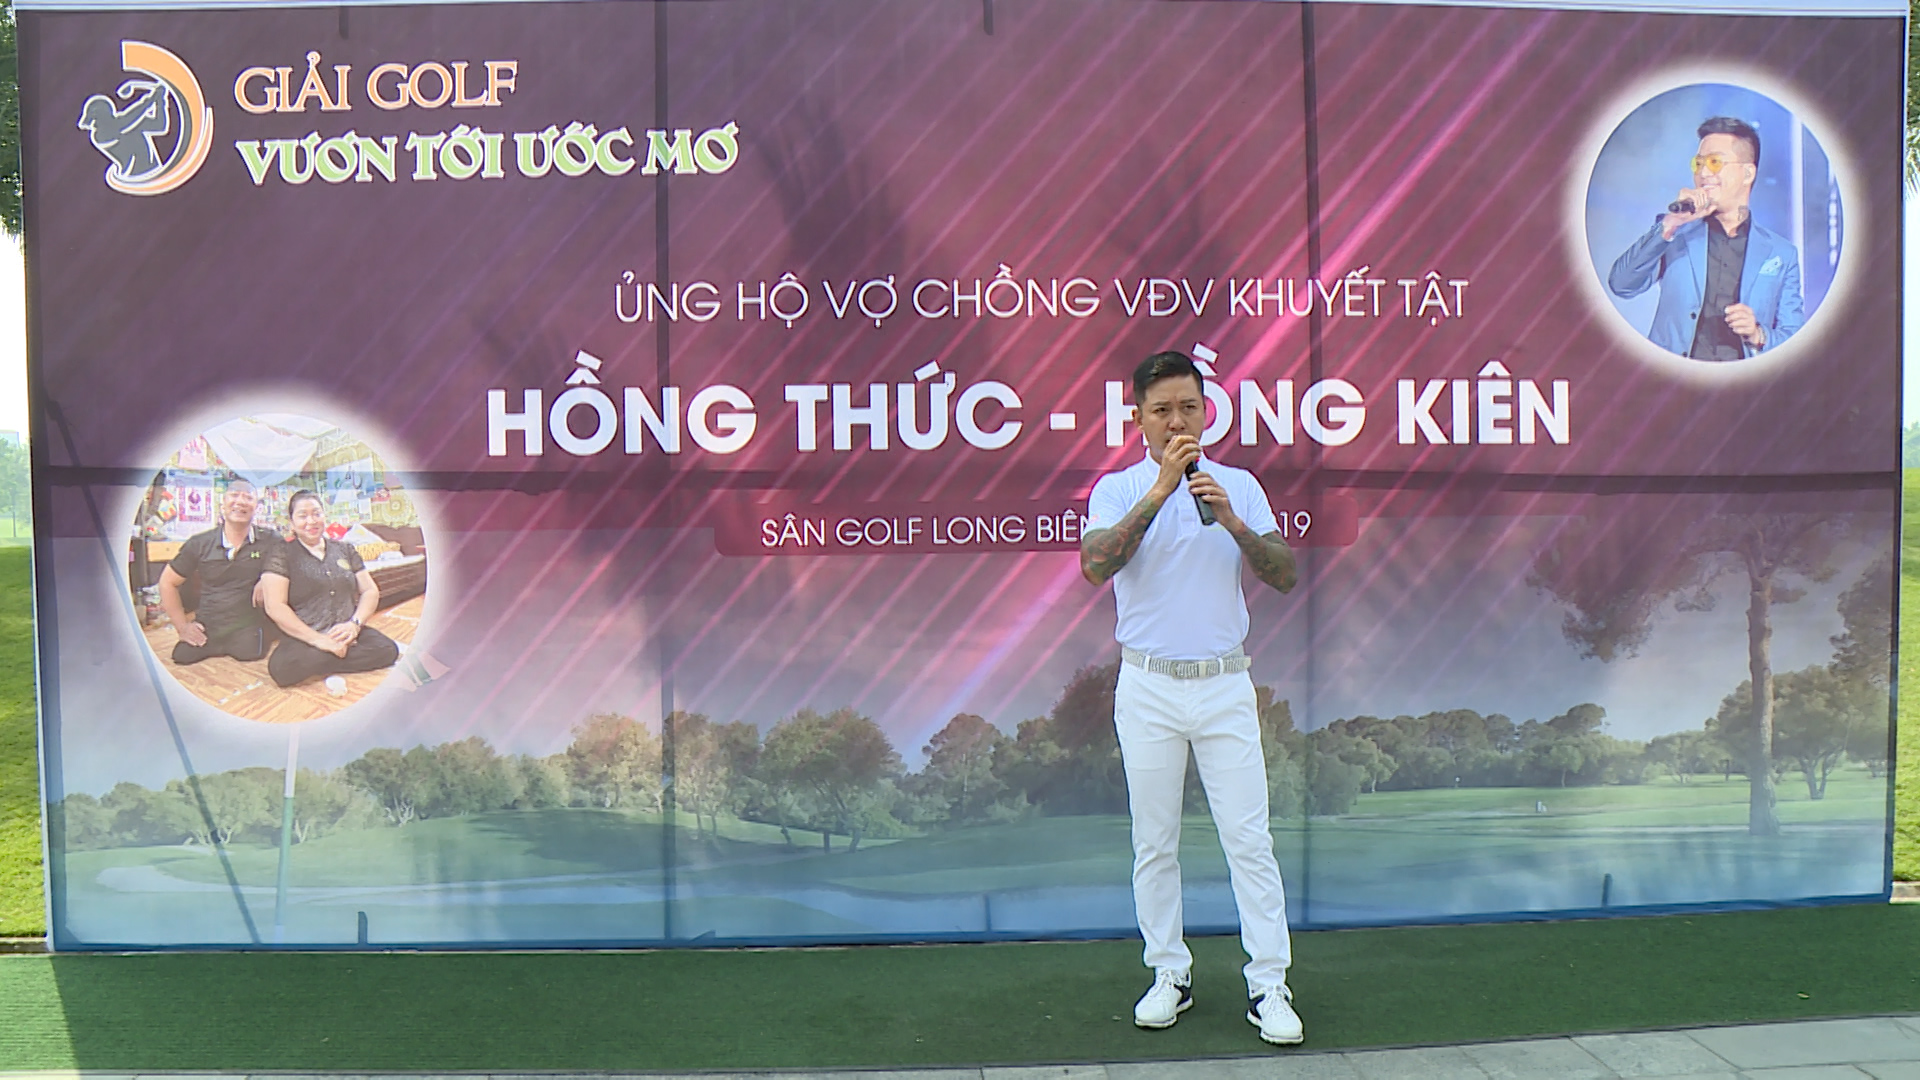 Khởi tranh giải golf “Vươn tới ước mơ” ủng hộ vợ chồng VĐV Hồng Thức – Hồng Kiên